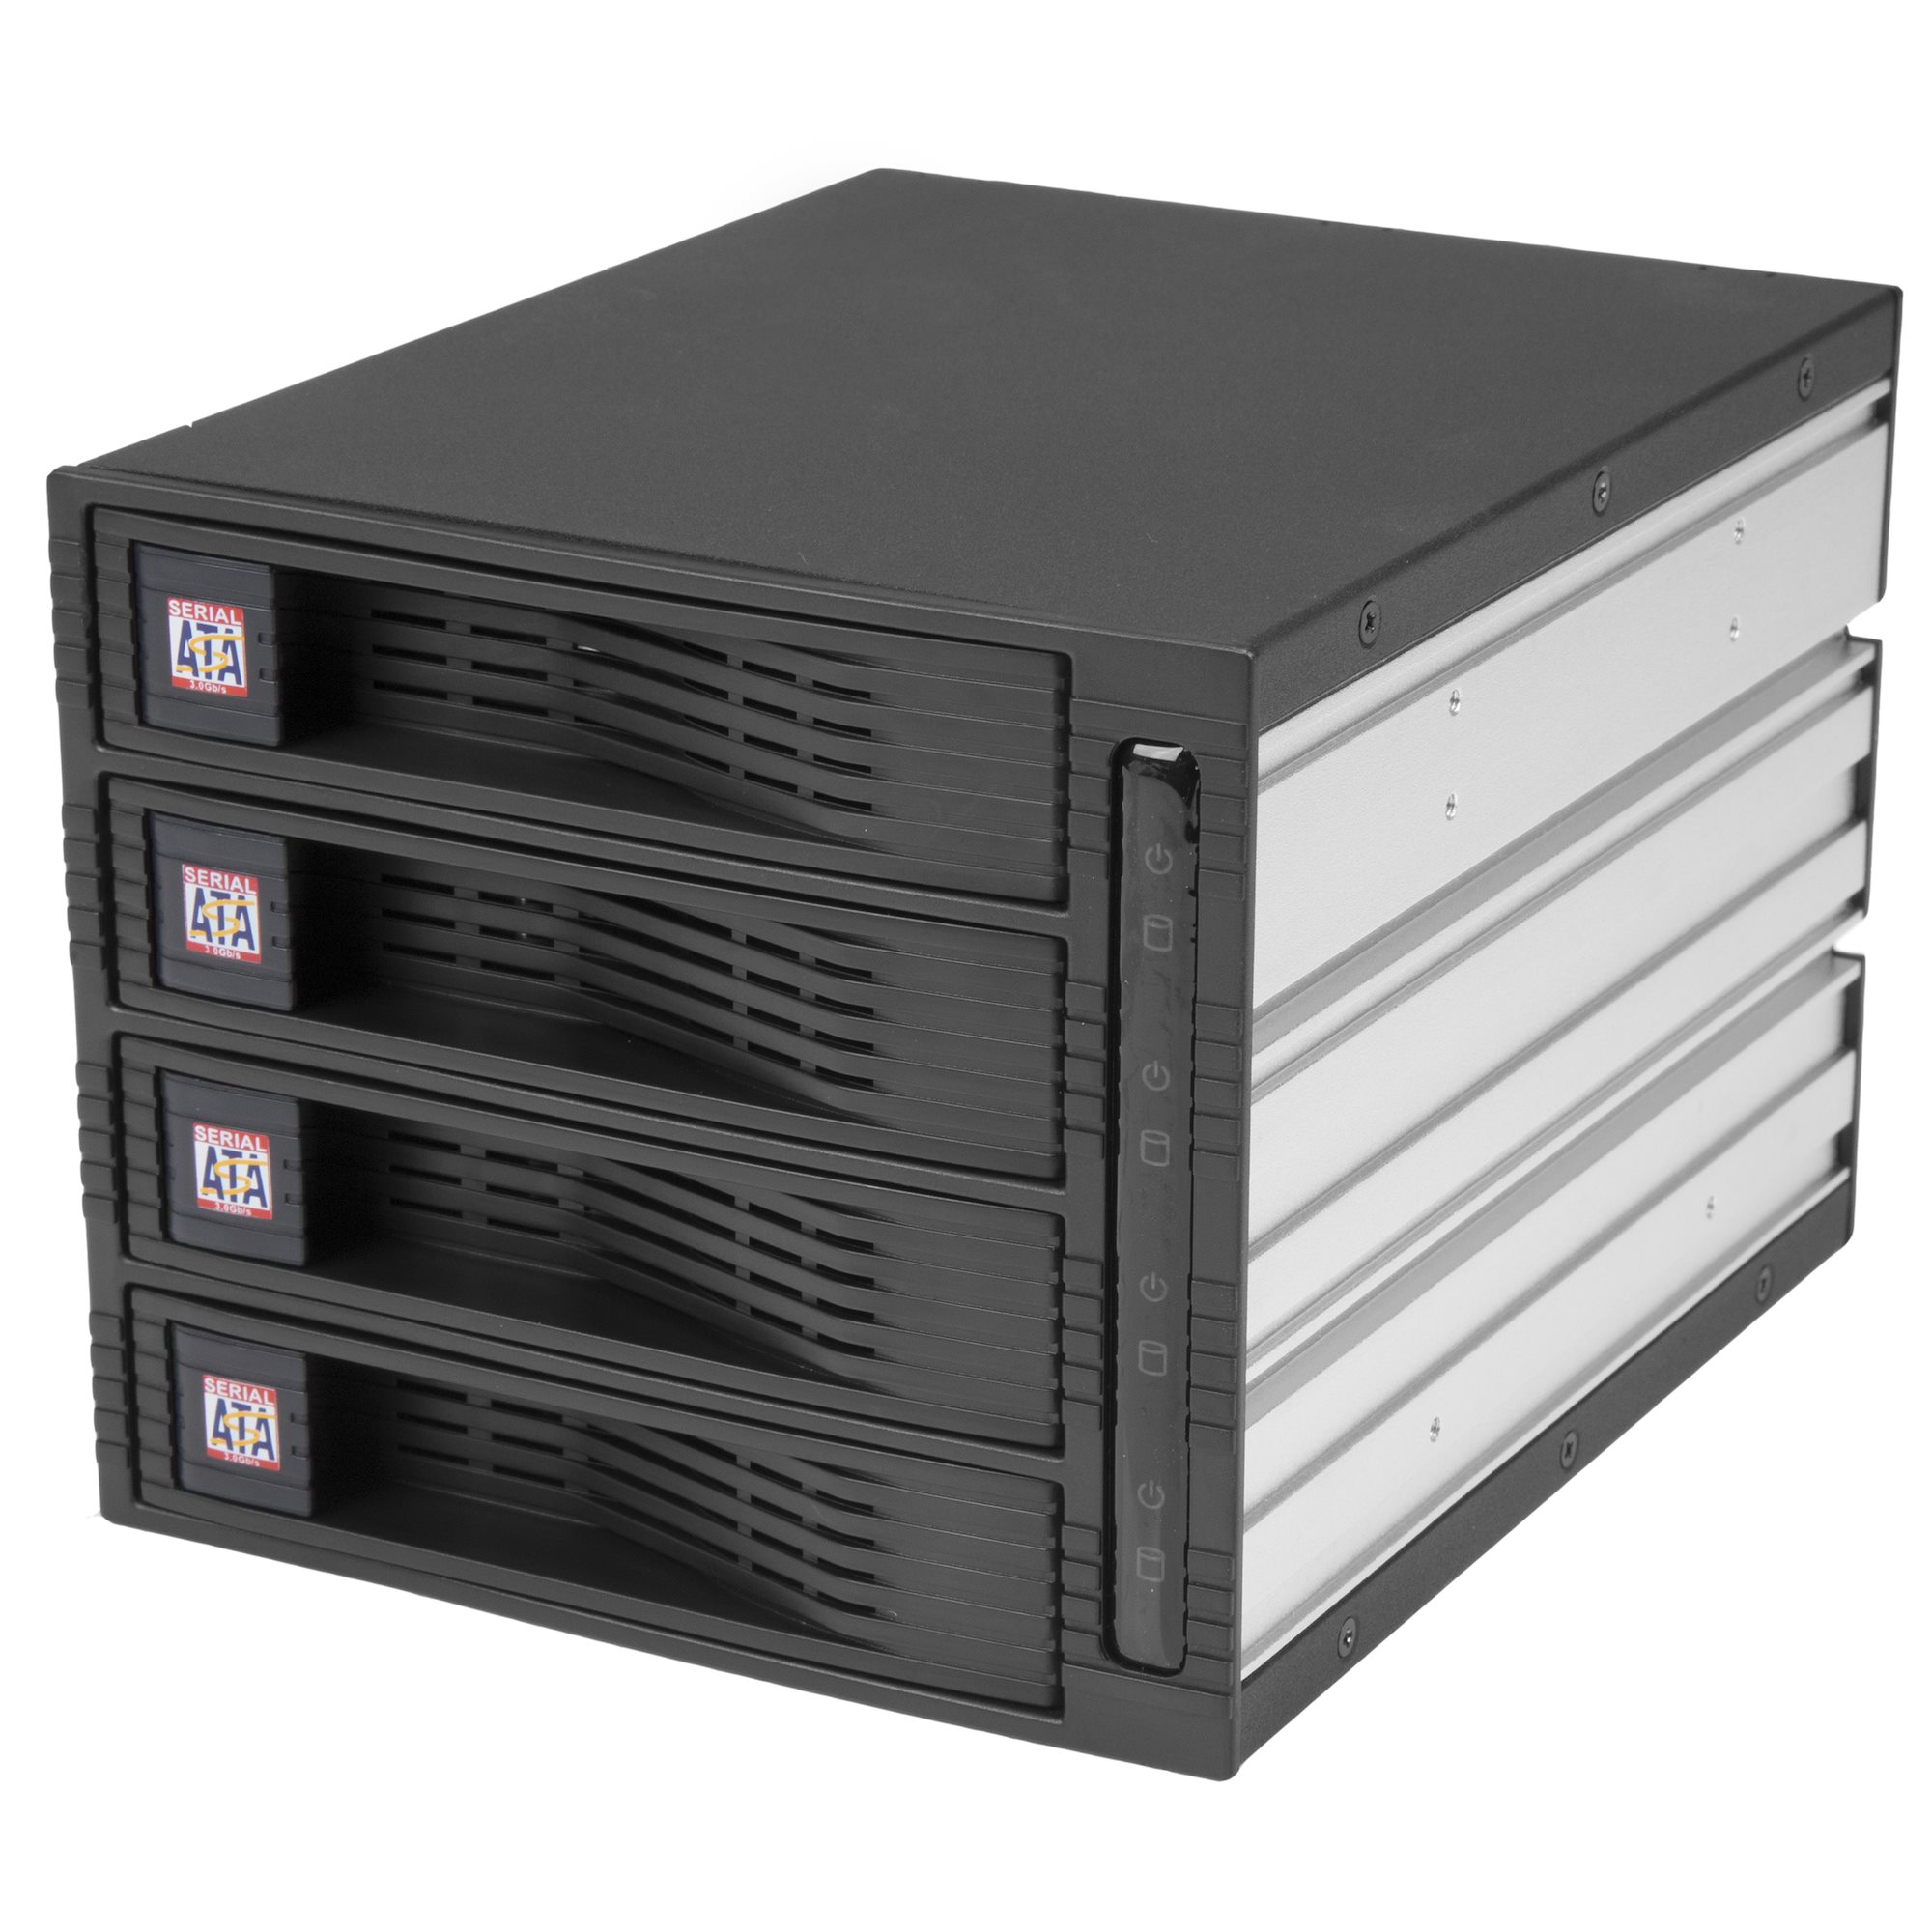 Caja de servidor de almacenamiento Nas para disco duro, alta calidad, sin  herramientas, 4 bandejas HDD, 4 bahías, compatible con placa base de